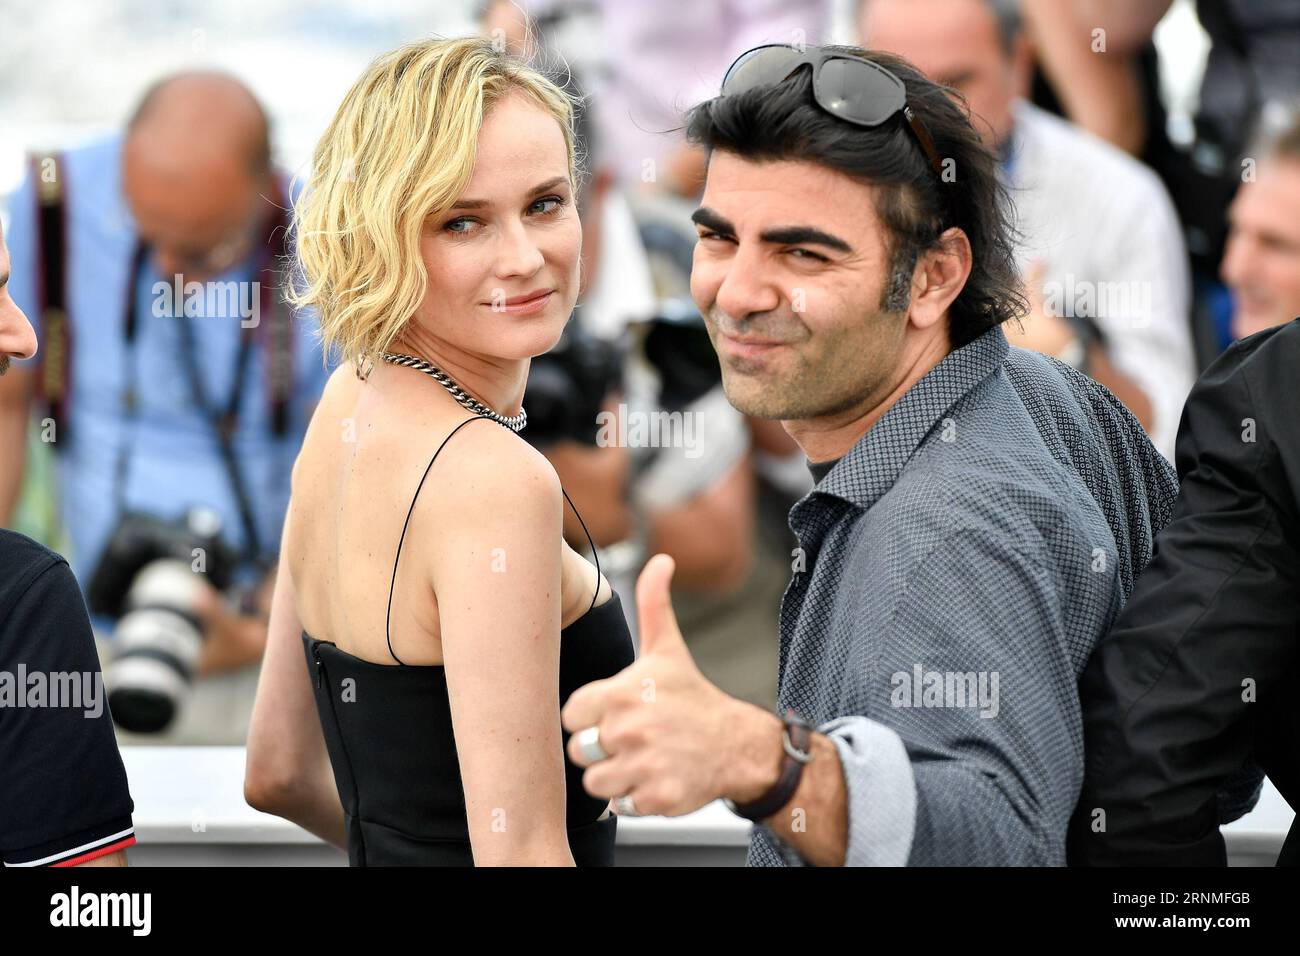 (170526) -- CANNES, 26. Mai 2017 -- Regisseur Fatih Akin (R) und Schauspielerin Diane Kruger des Films in der Fade posieren für einen Fototermin in Cannes, Frankreich am 26. Mai 2017. Der Film in the Fade unter der Regie von Fatih Akin wird für die Palme d oder auf dem 70. Filmfestival von Cannes konkurrieren. )(yk) FRANKREICH-CANNES-70. FILMFESTSPIELE CANNES-IN WETTBEWERB-IN DER FADE-FOTOAUFRUF ChenxYichen PUBLICATIONxNOTxINxCHN Cannes Mai 26 2017 Regisseur Fatih Akin r und Schauspielerin Diane Kruger des Films in der Fade Pose für einen FOTOTERMIN in Cannes Frankreich AM 26 2017. Mai der Film in der Fade Regie von Fatih Akin will konkurrieren Sie um Stockfoto